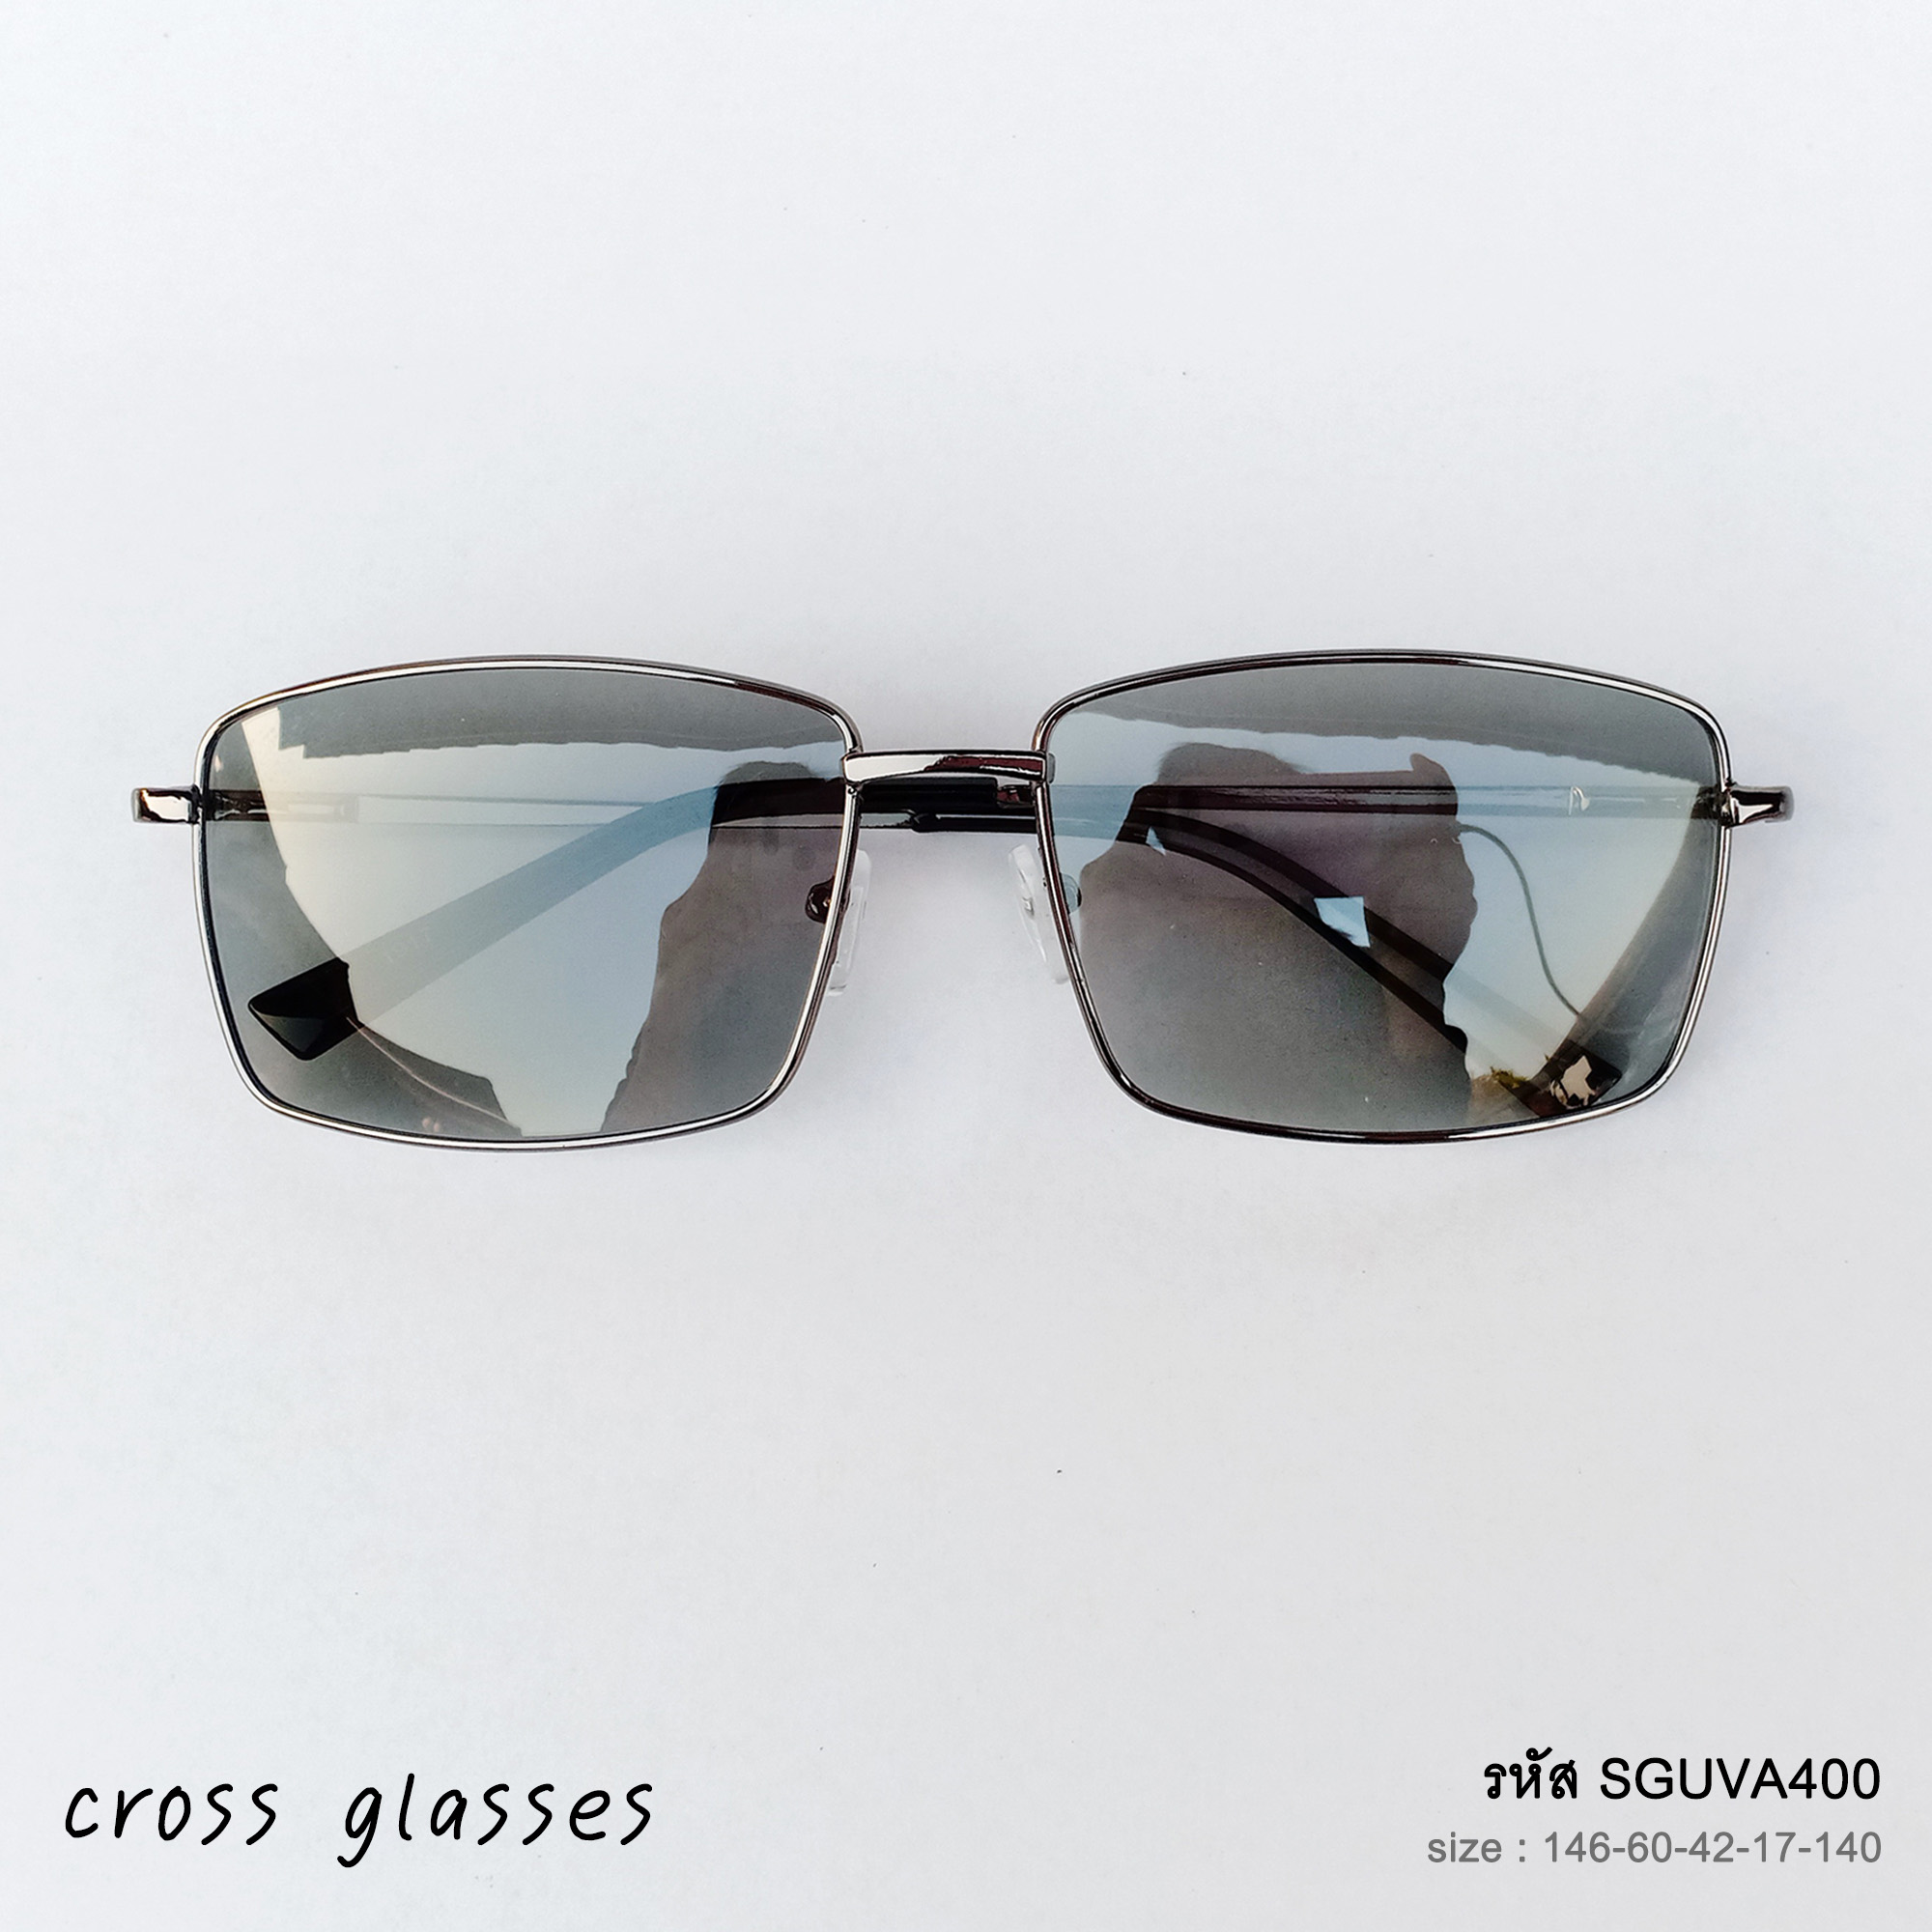 ข้อมูลเกี่ยวกับ แว่นตากันแดด เลนส์ Polarized Auto ออกแดดเปลี่ยนสี แว่นตาขับรถ รหัส SGUVA400